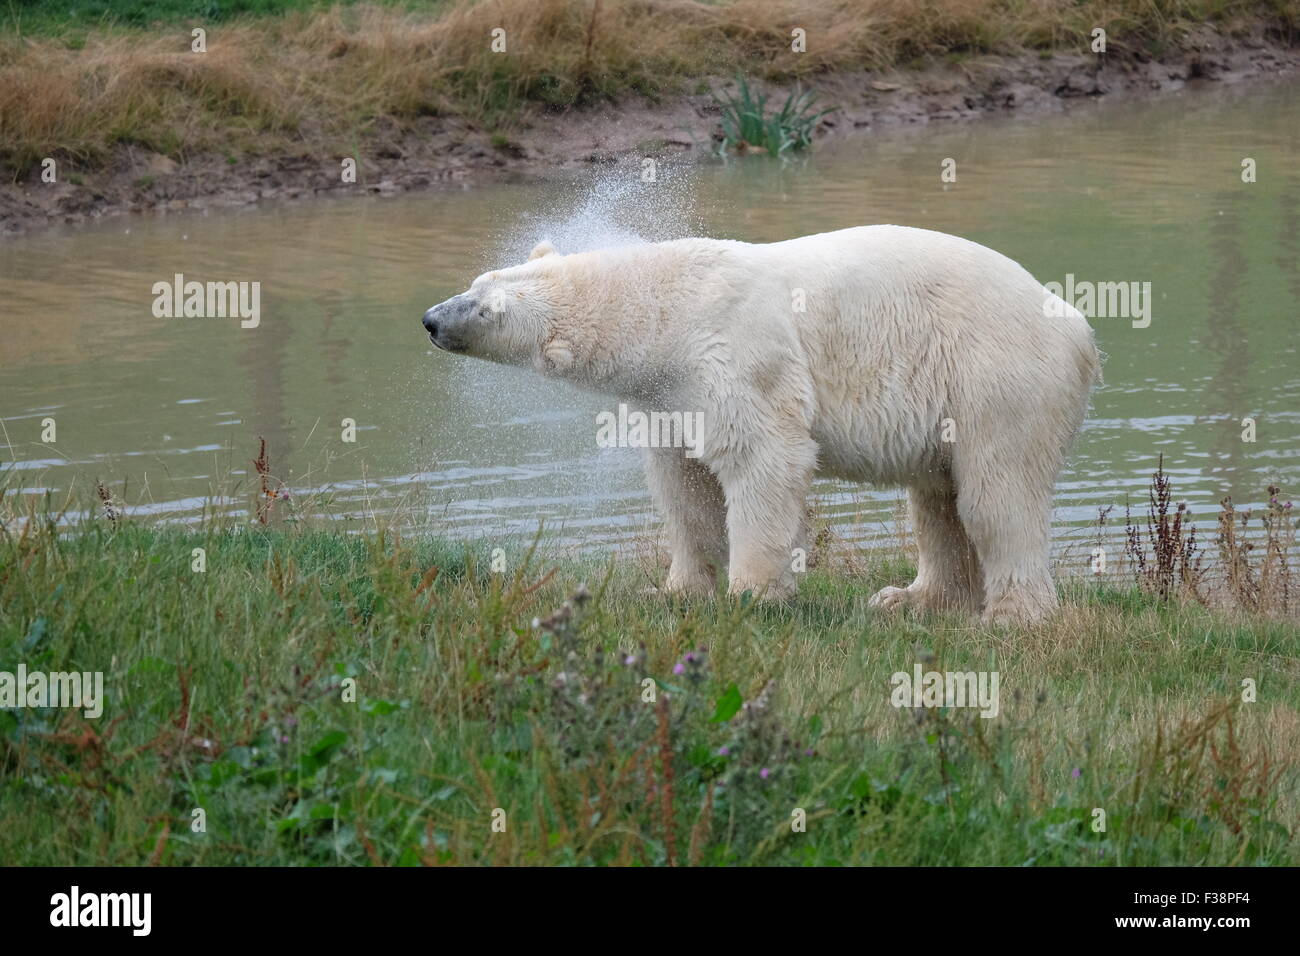 Un orso polare conosciuto come Victor si scuote dopo una nuotata, allo Yorkshire Wildlife Park vicino a Doncaster, Regno Unito Foto Stock